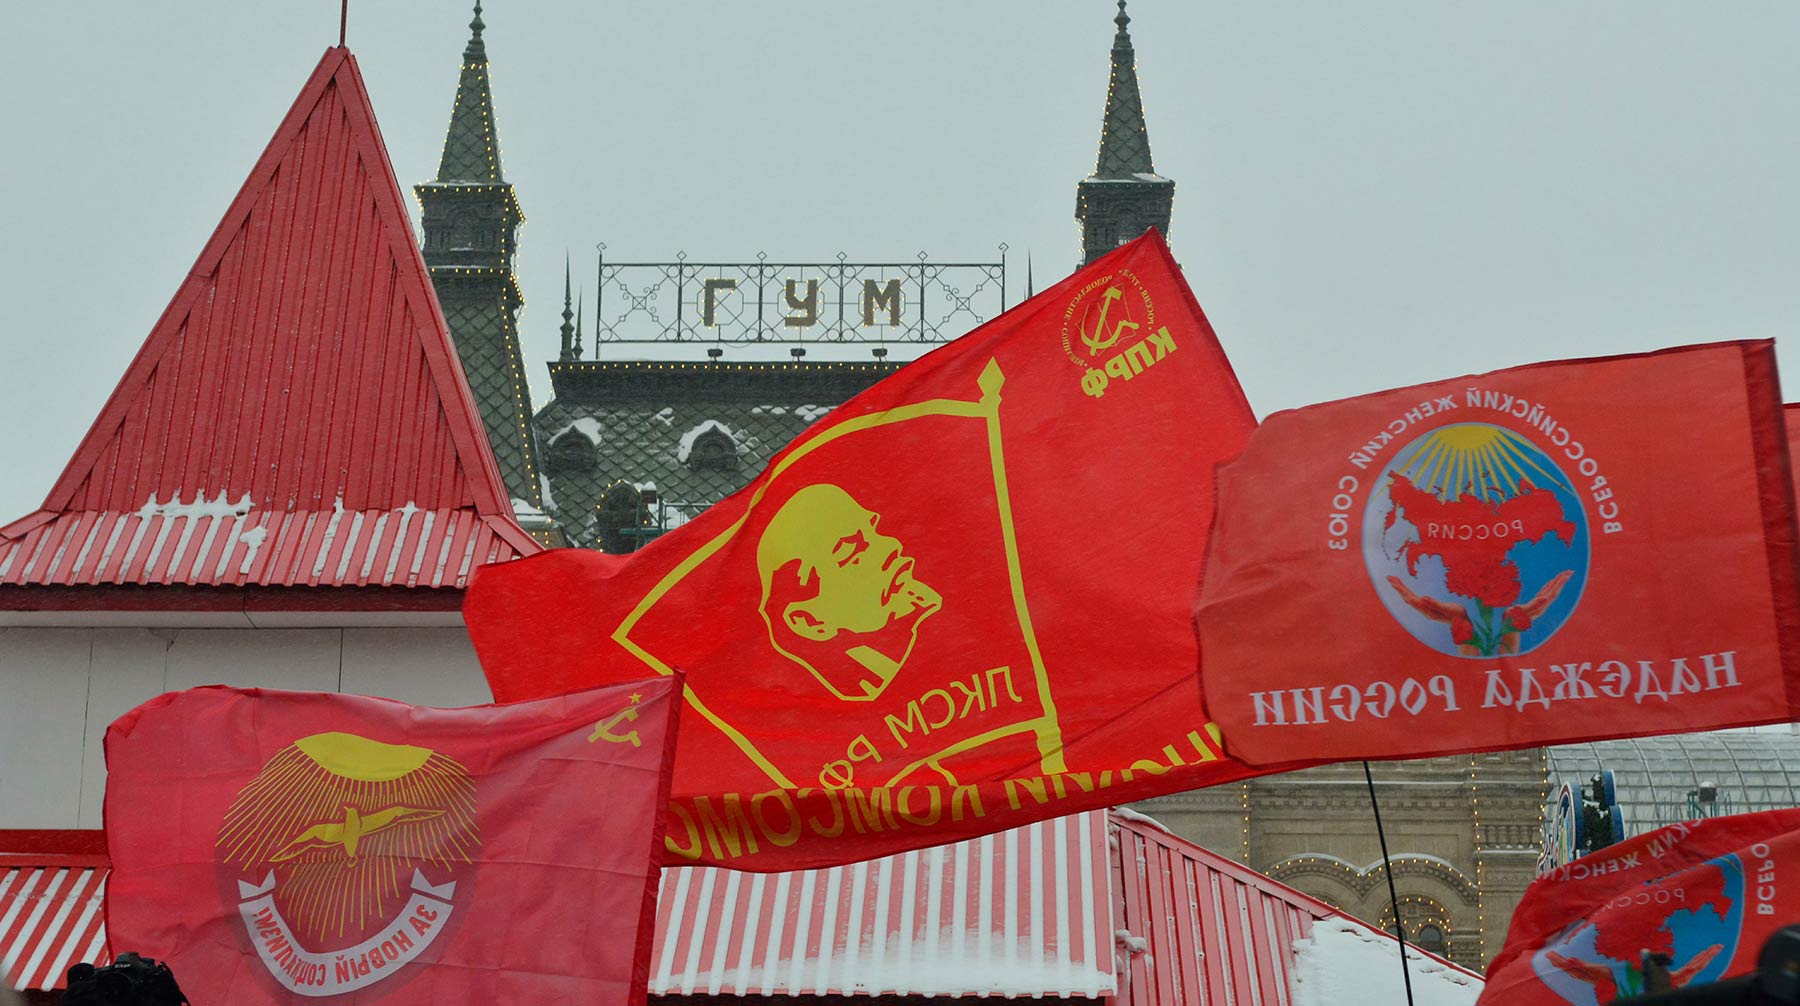 Коммунисты надеются, что им удастся договориться и провести акцию в соответствии с законом Фото: © Global Look Press / Павел Кашаев